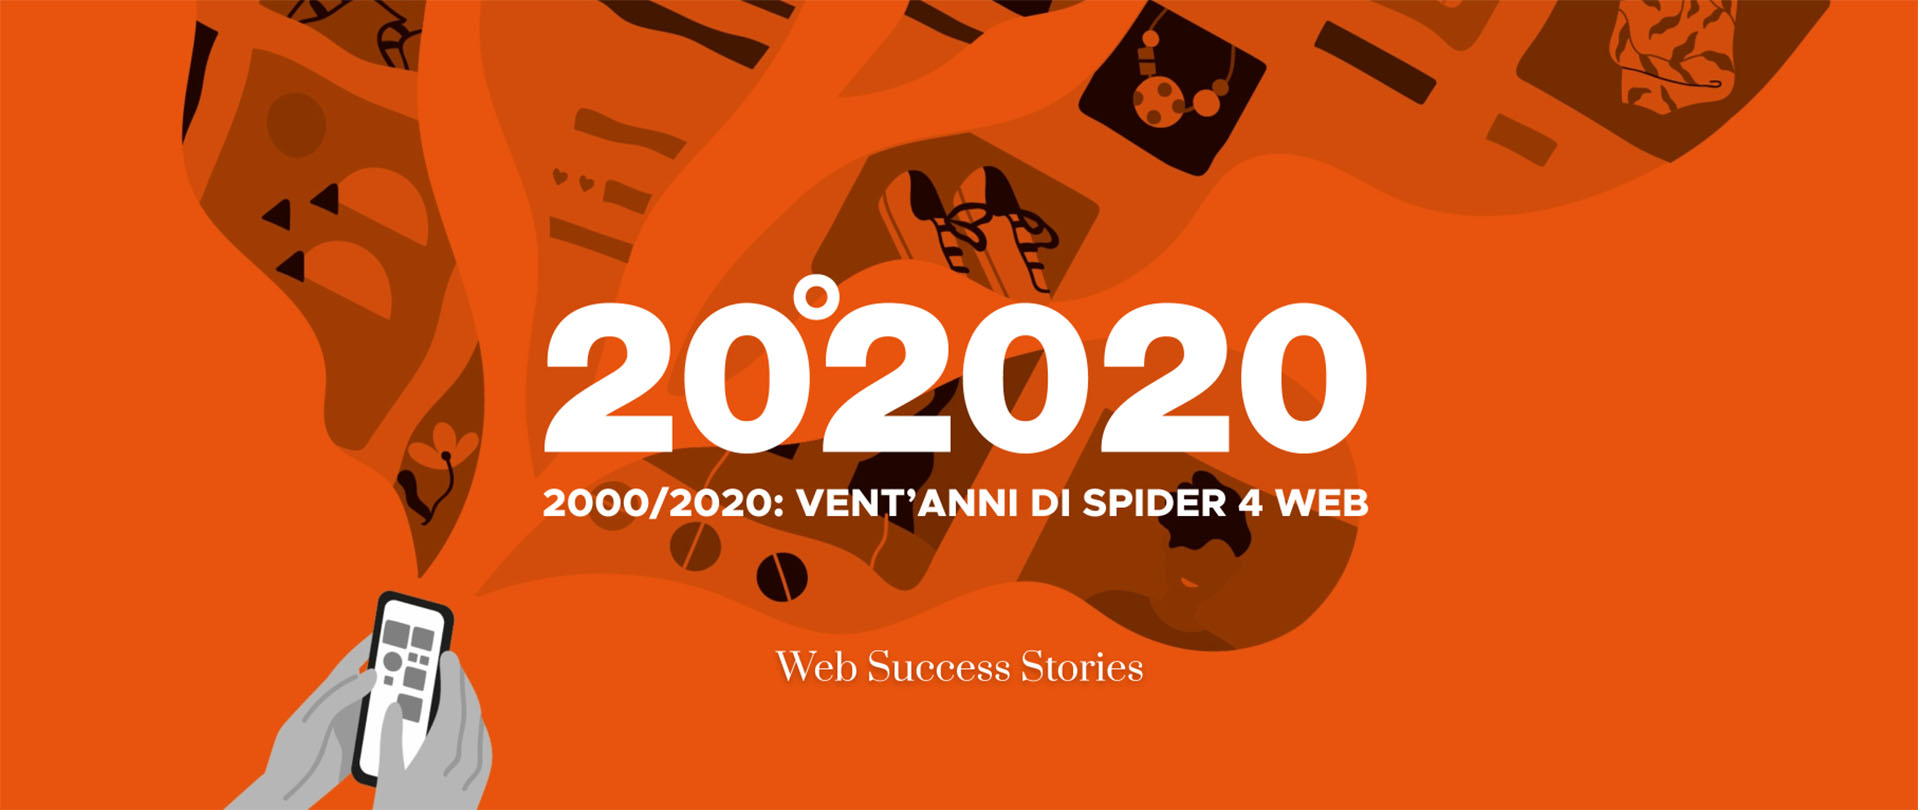 2020: 20 anni di Spider 4 Web!